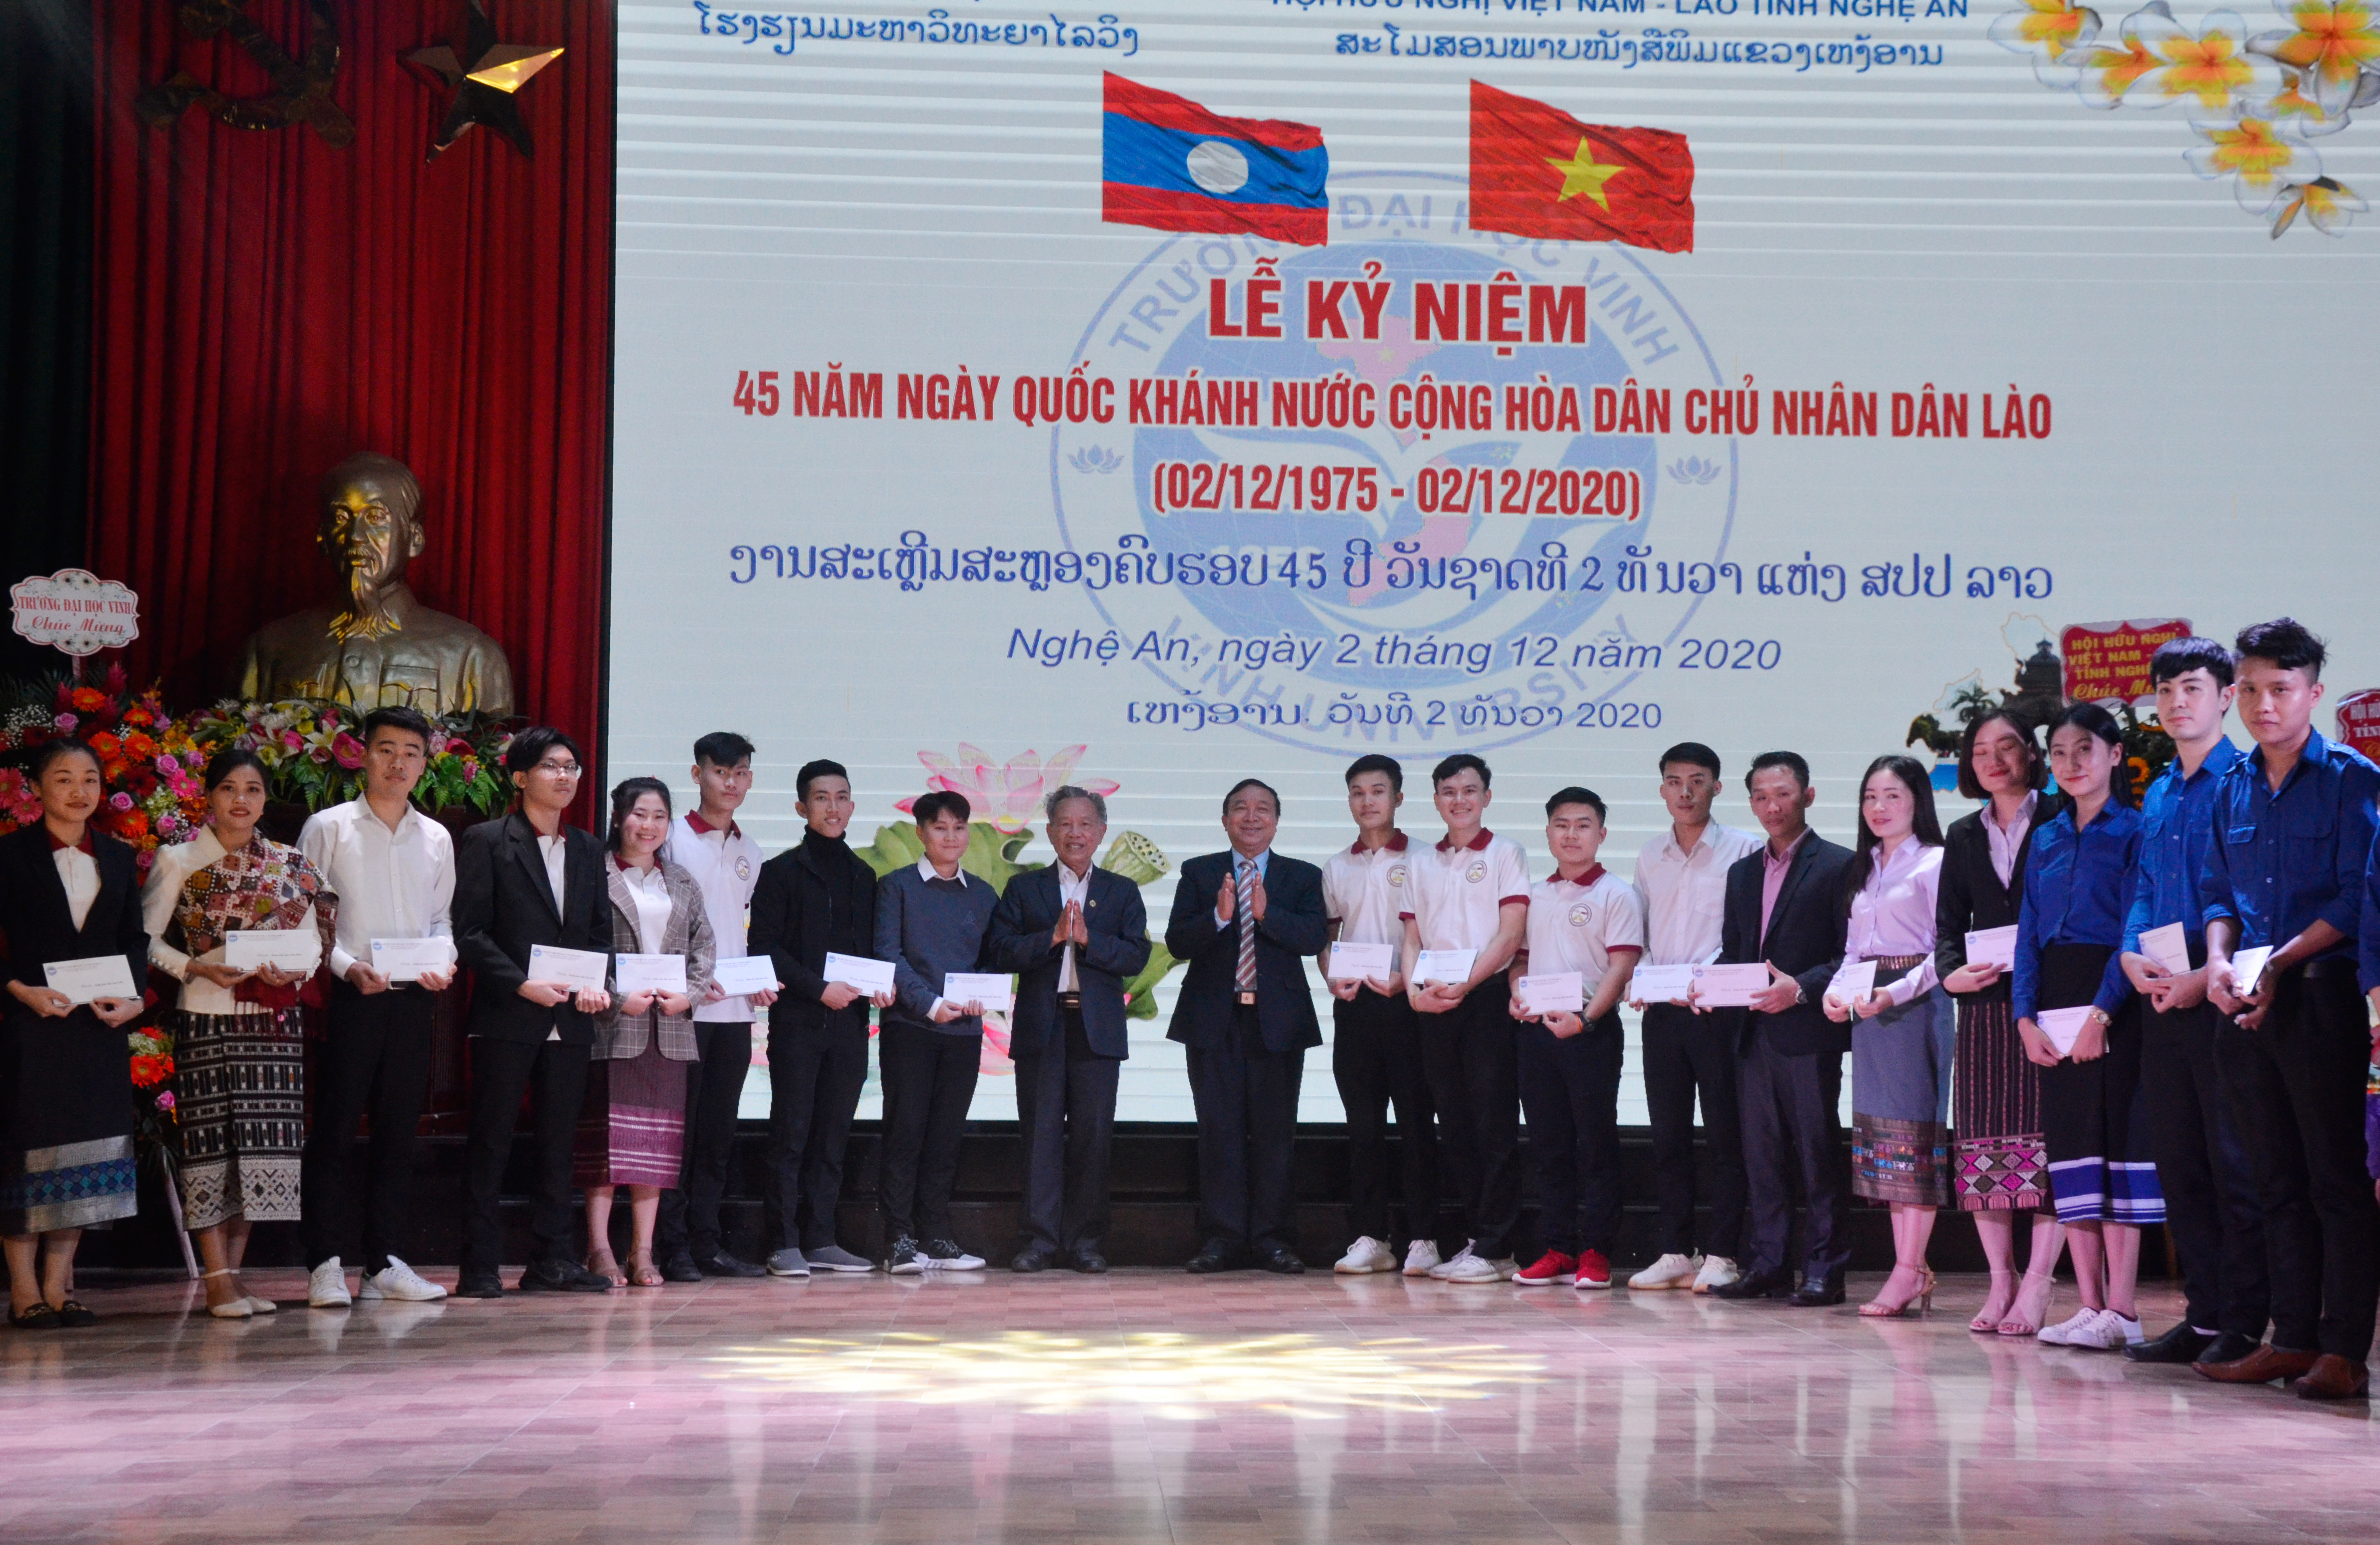 Hội hữu nghị Việt Nam - Lào tỉnh Nghệ An